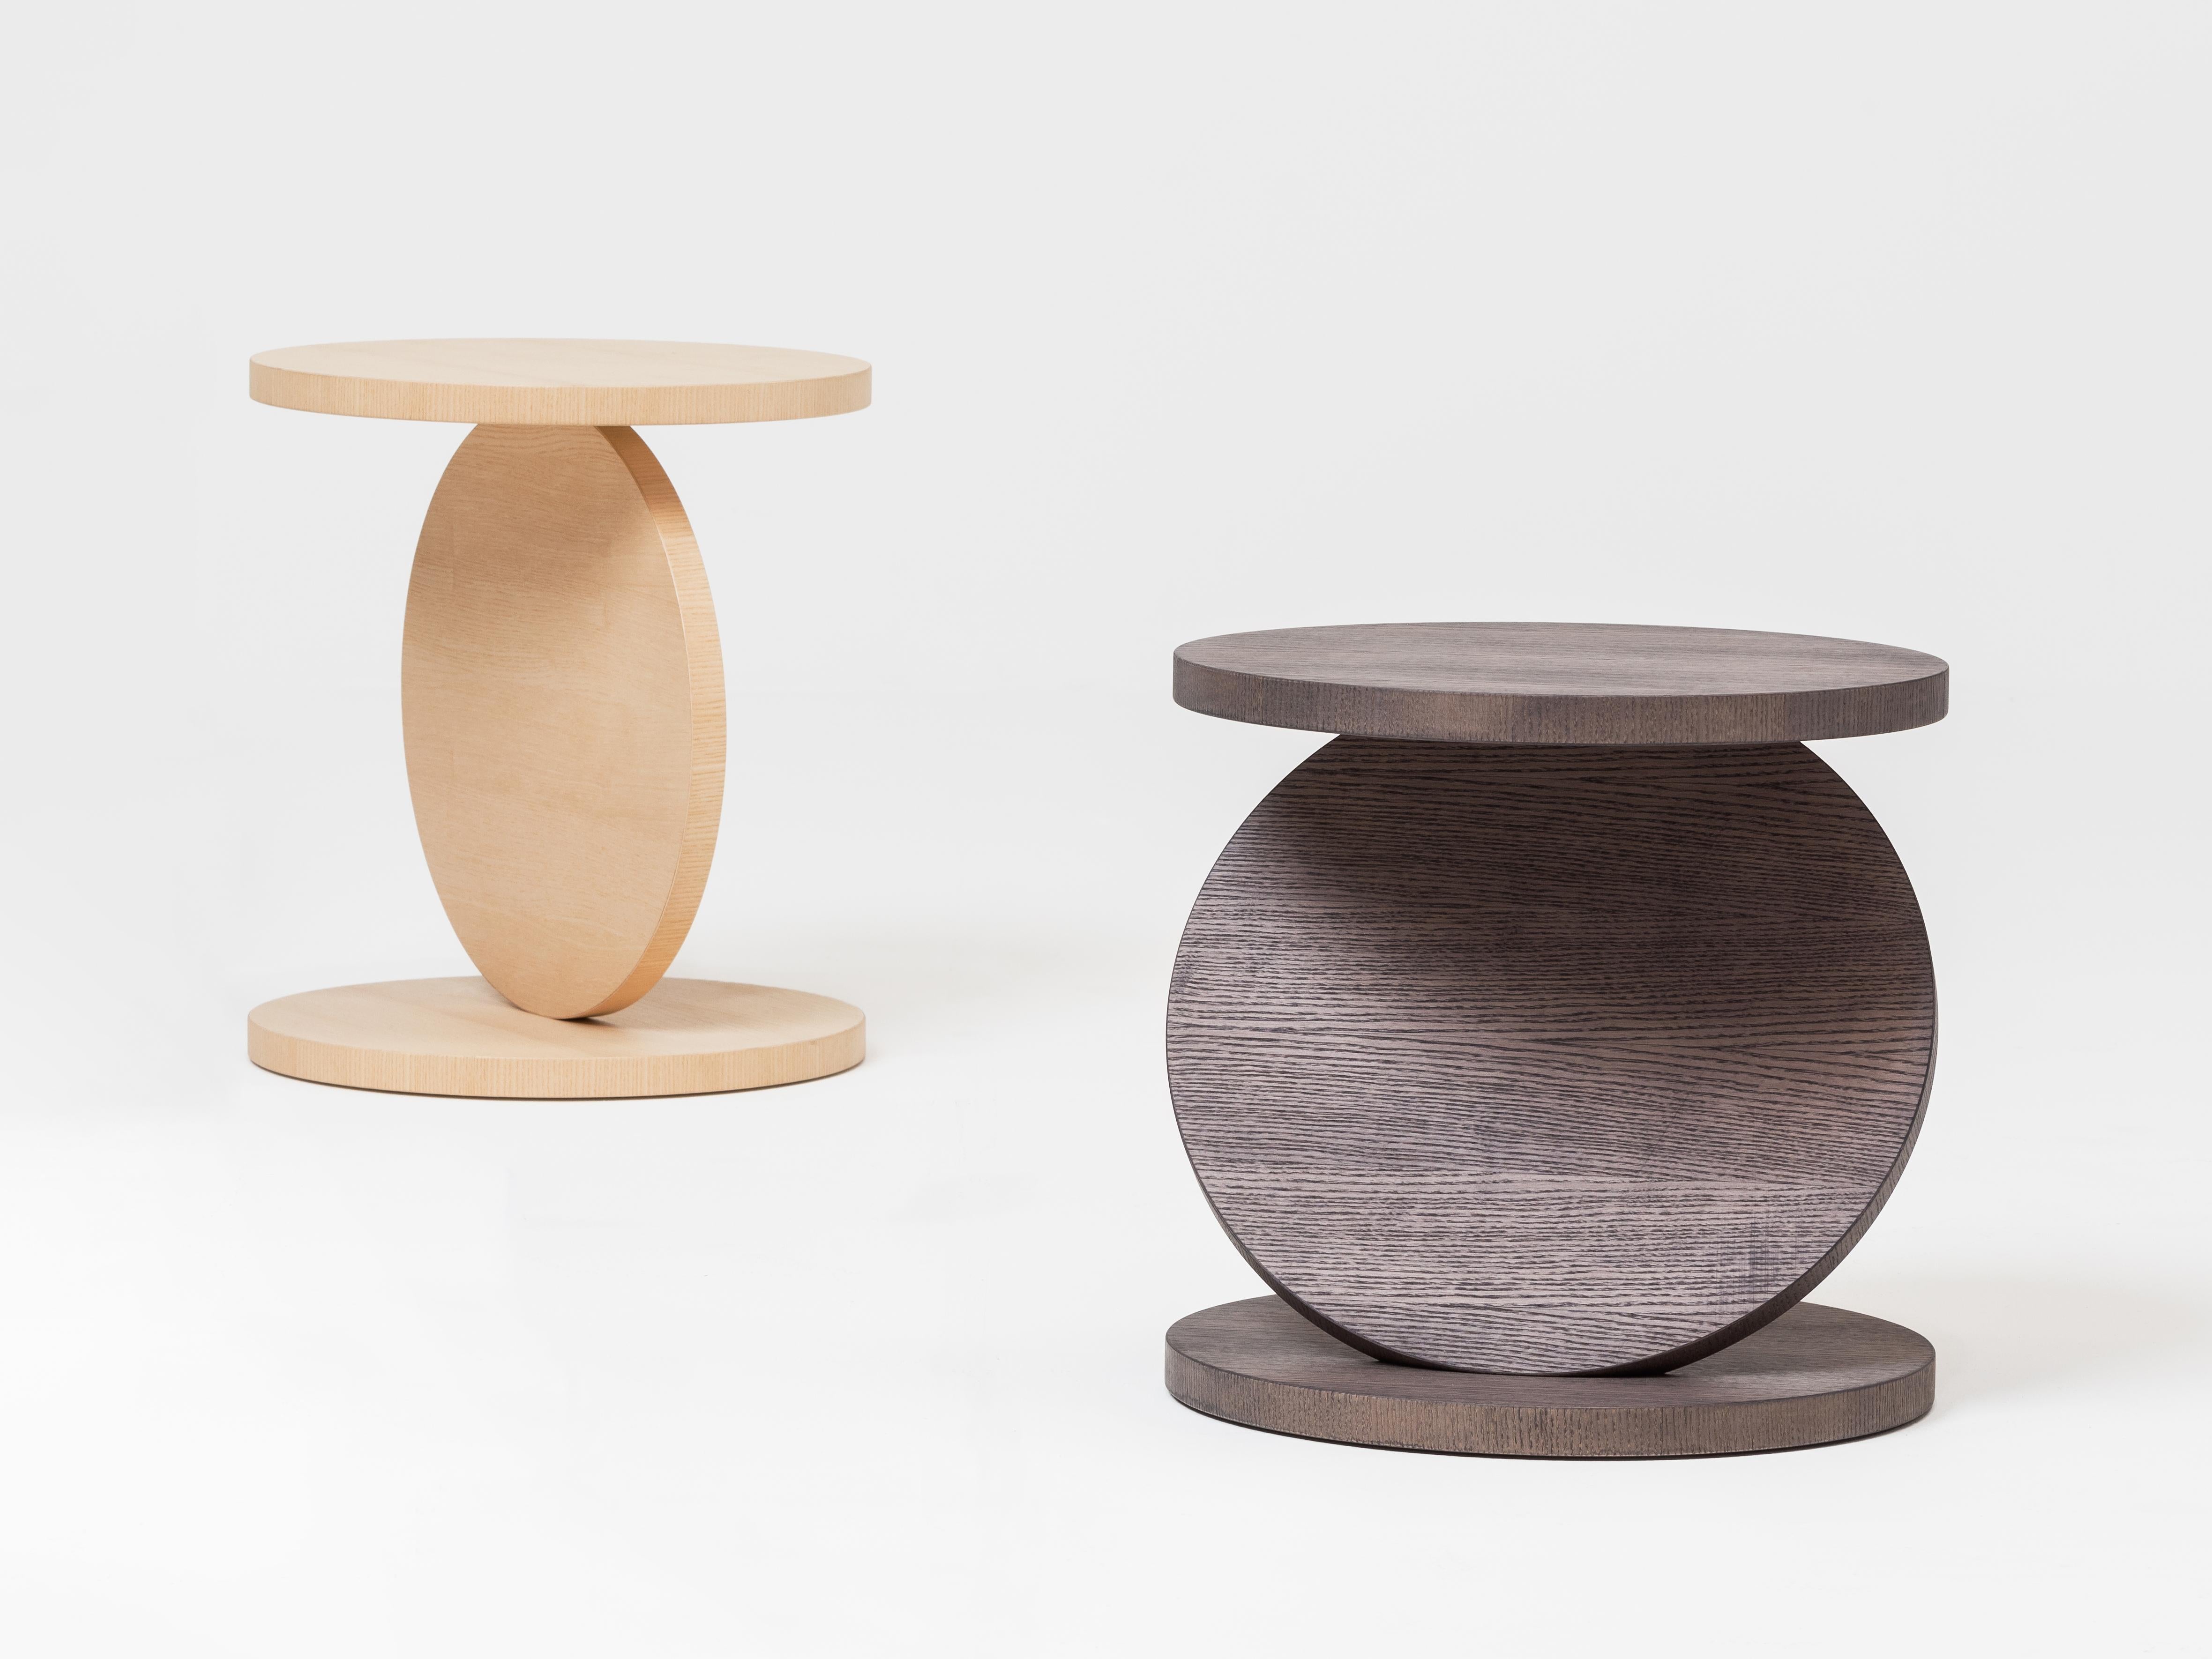 Les tables basses en bois massif de la collection Match Point, à la fois géométriques et dynamiques, sont disponibles en trois hauteurs différentes et présentent des finitions en bois naturel. Trois disques circulaires - maintenus ensemble et